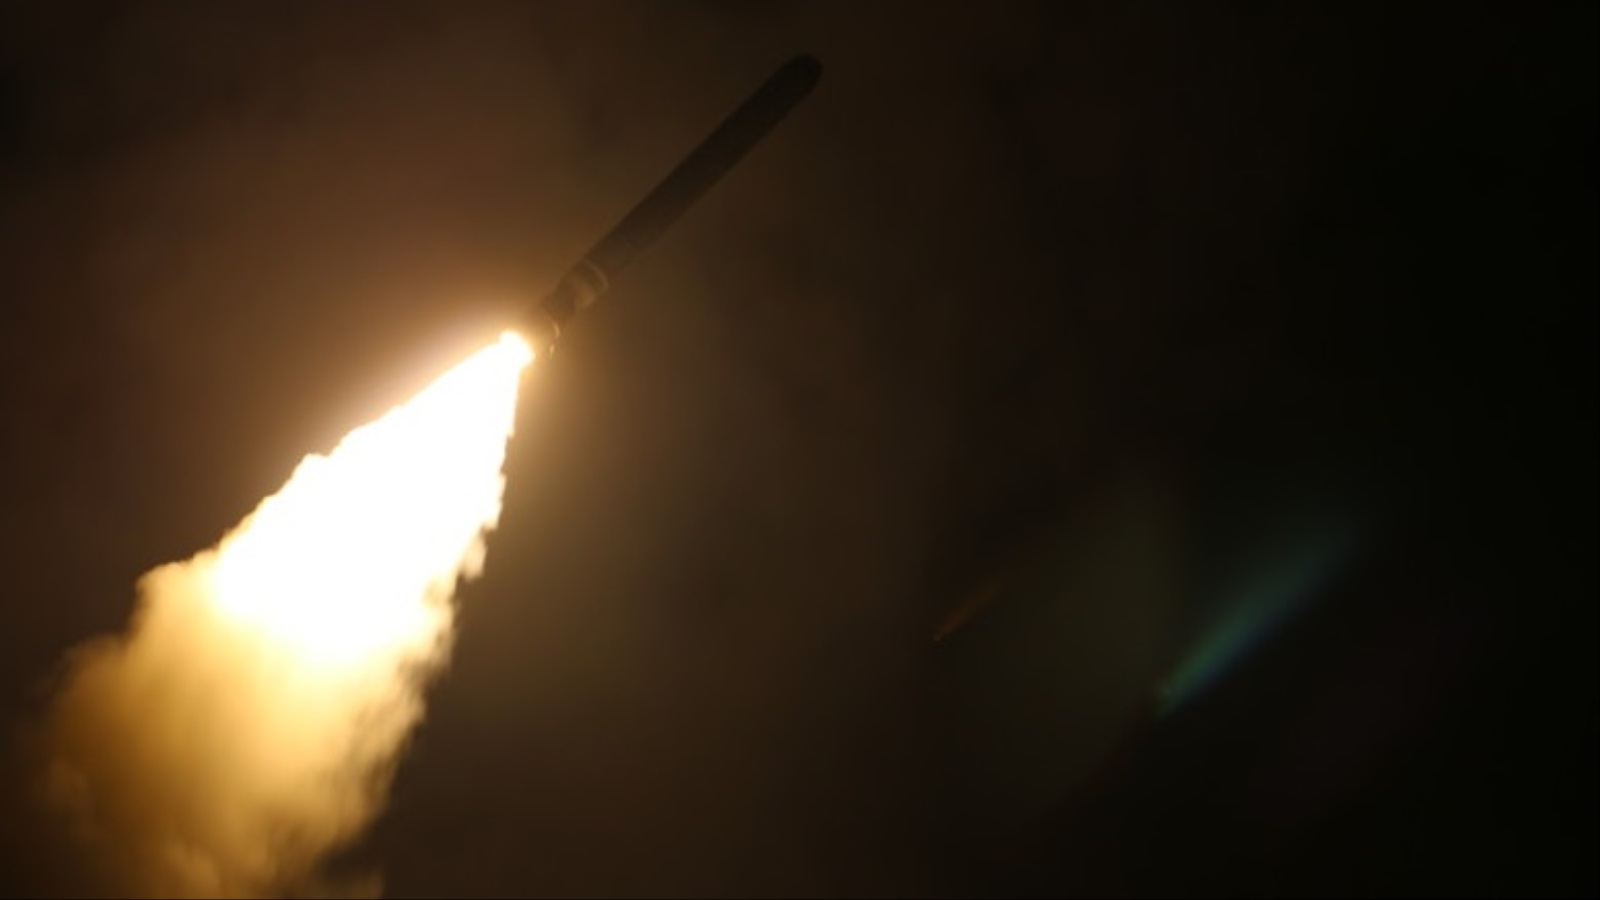 ‪أحد الصواريخ التي أطلقتها البحرية الأميركية على مواقع عسكرية في سوريا ردا على الهجوم الكيميائي في مدينة دوما بالغوطة الشرقية‬ (الأوروبية)